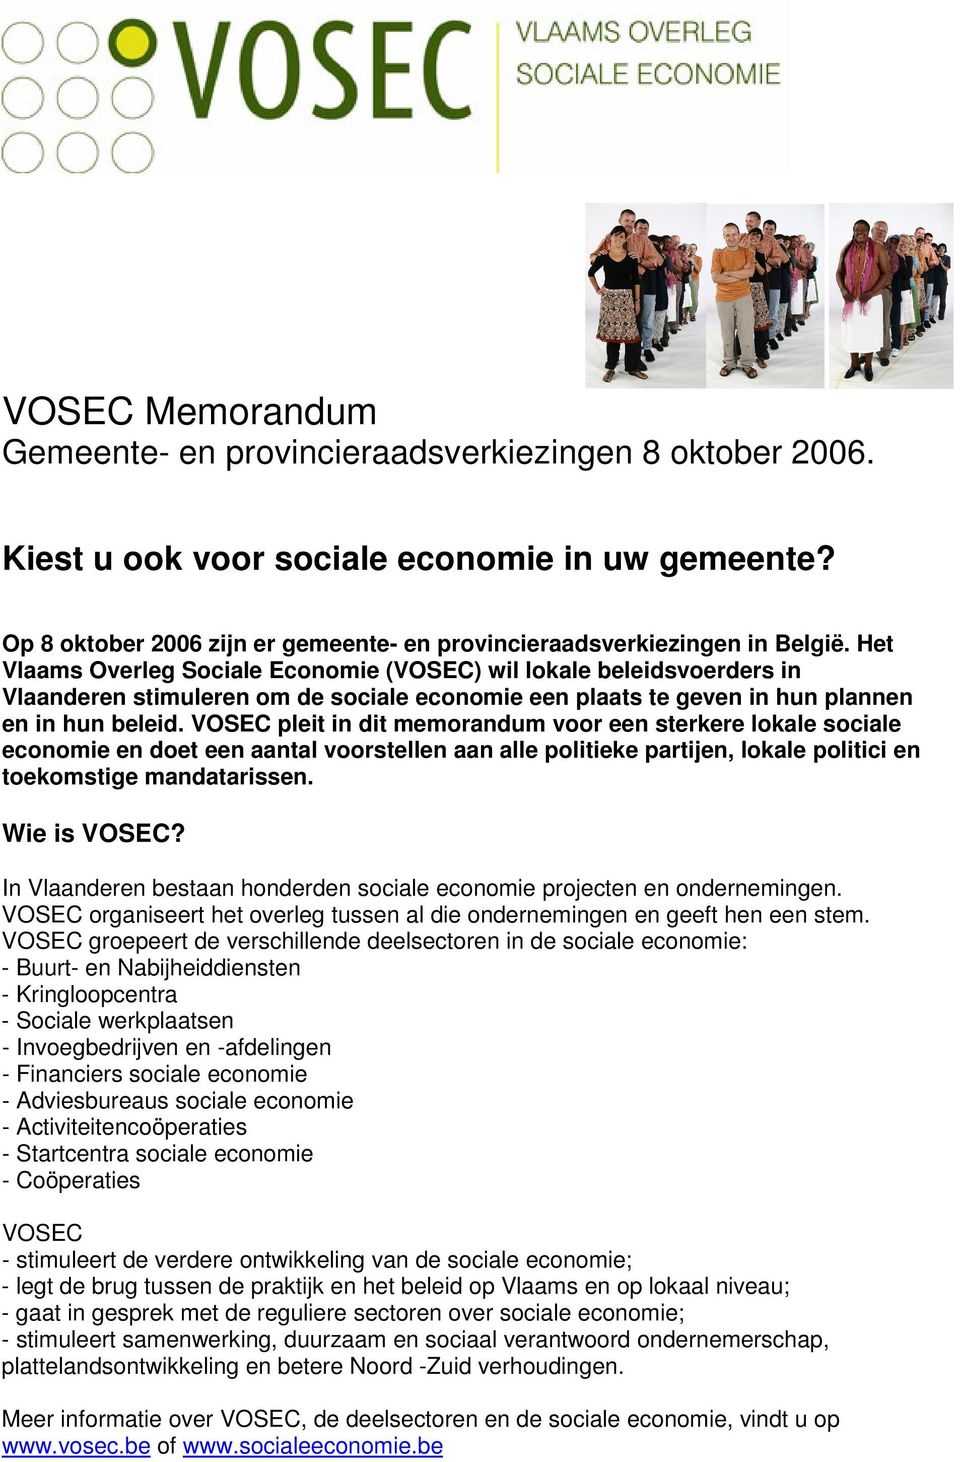 VOSEC pleit in dit memorandum voor een sterkere lokale sociale economie en doet een aantal voorstellen aan alle politieke partijen, lokale politici en toekomstige mandatarissen. Wie is VOSEC?